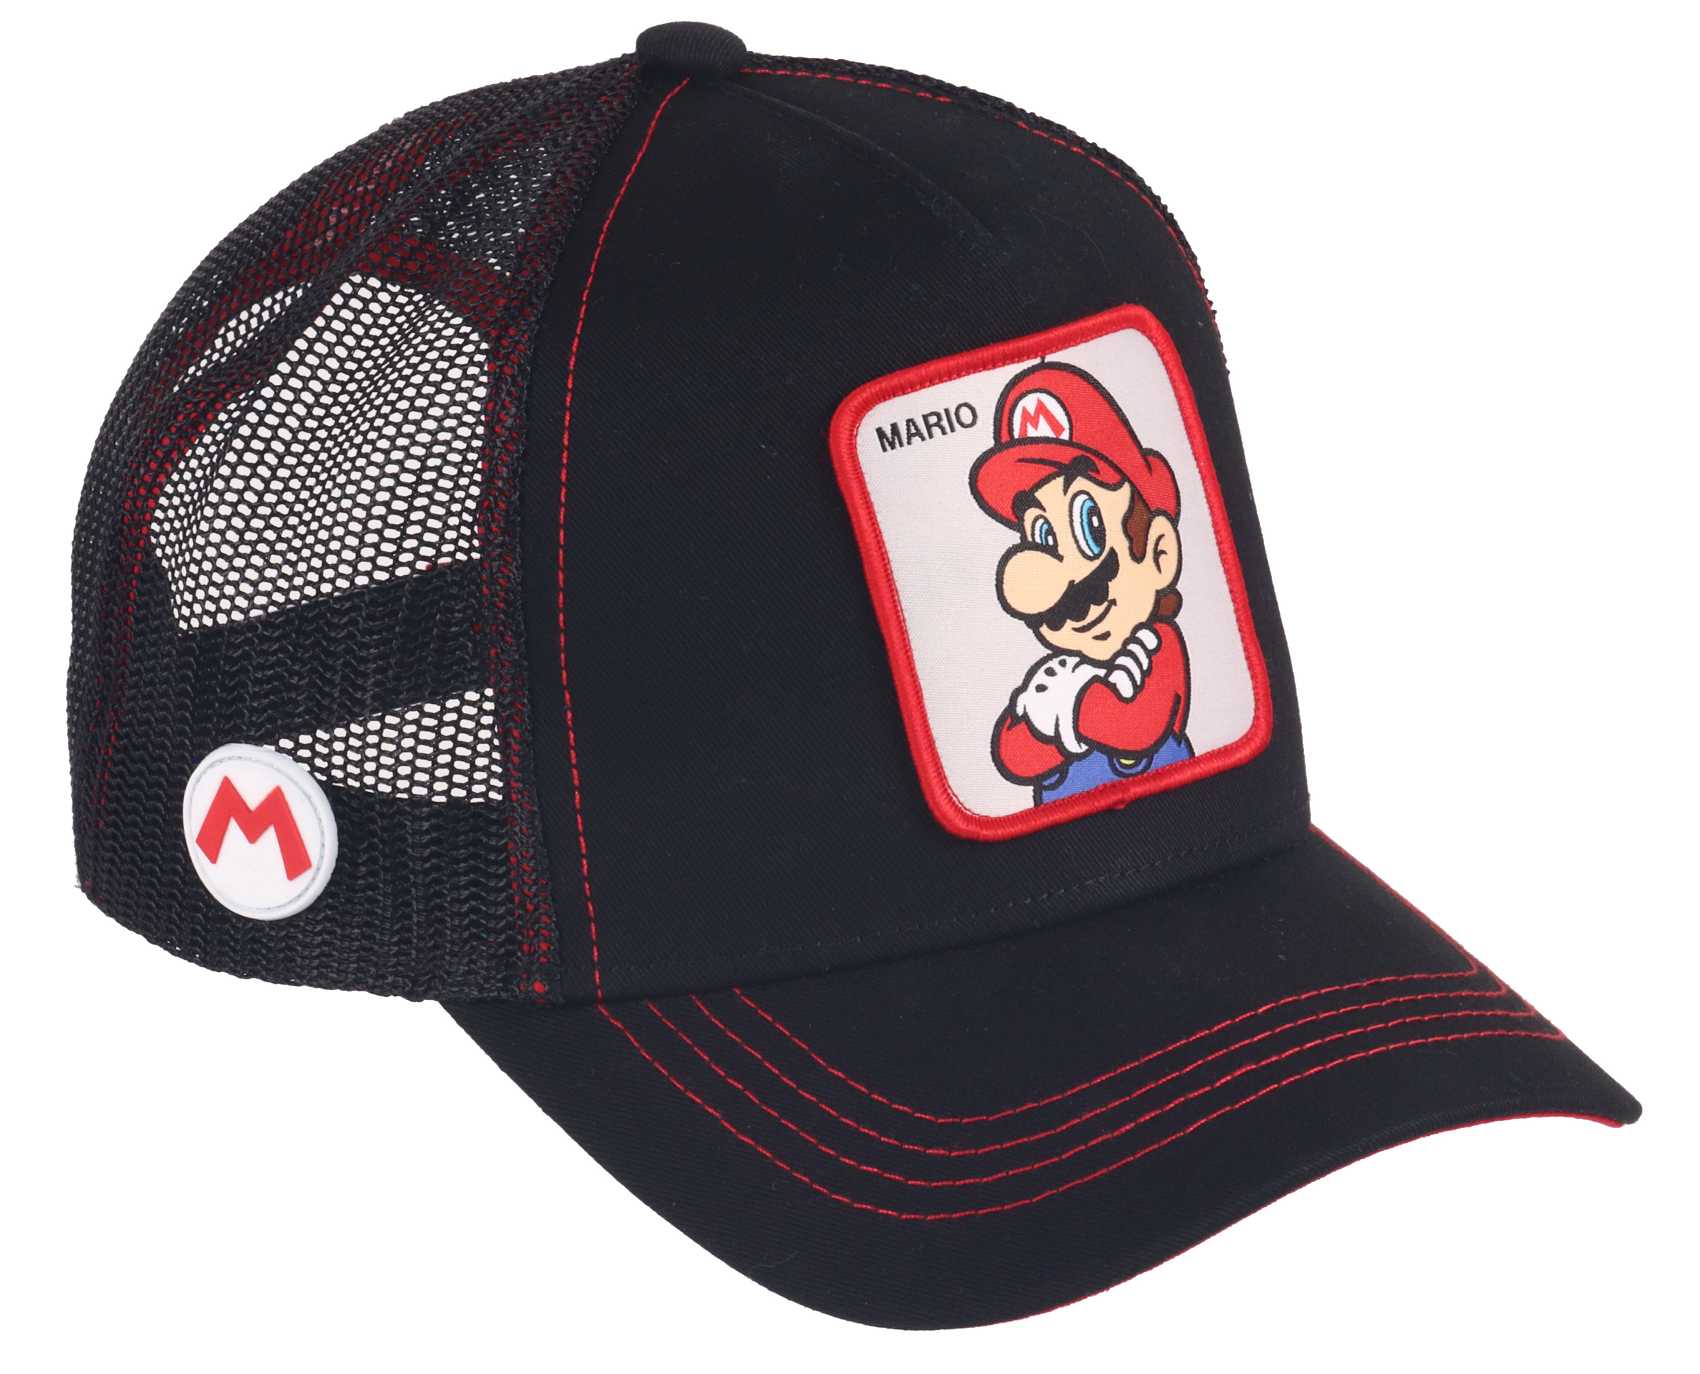 Mario Super Mario Trucker Cap Capslab